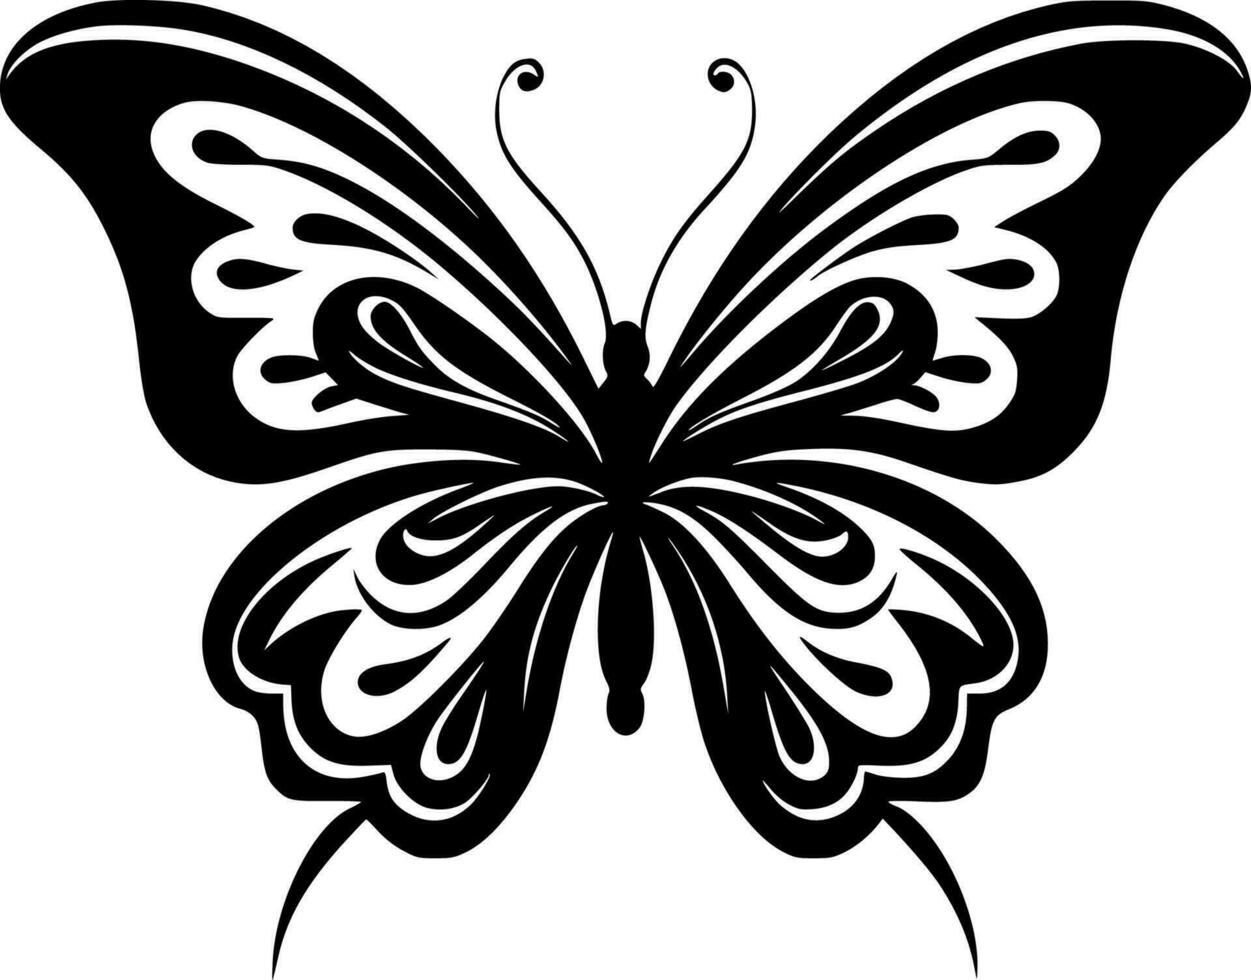 borboletas - Alto qualidade vetor logotipo - vetor ilustração ideal para camiseta gráfico